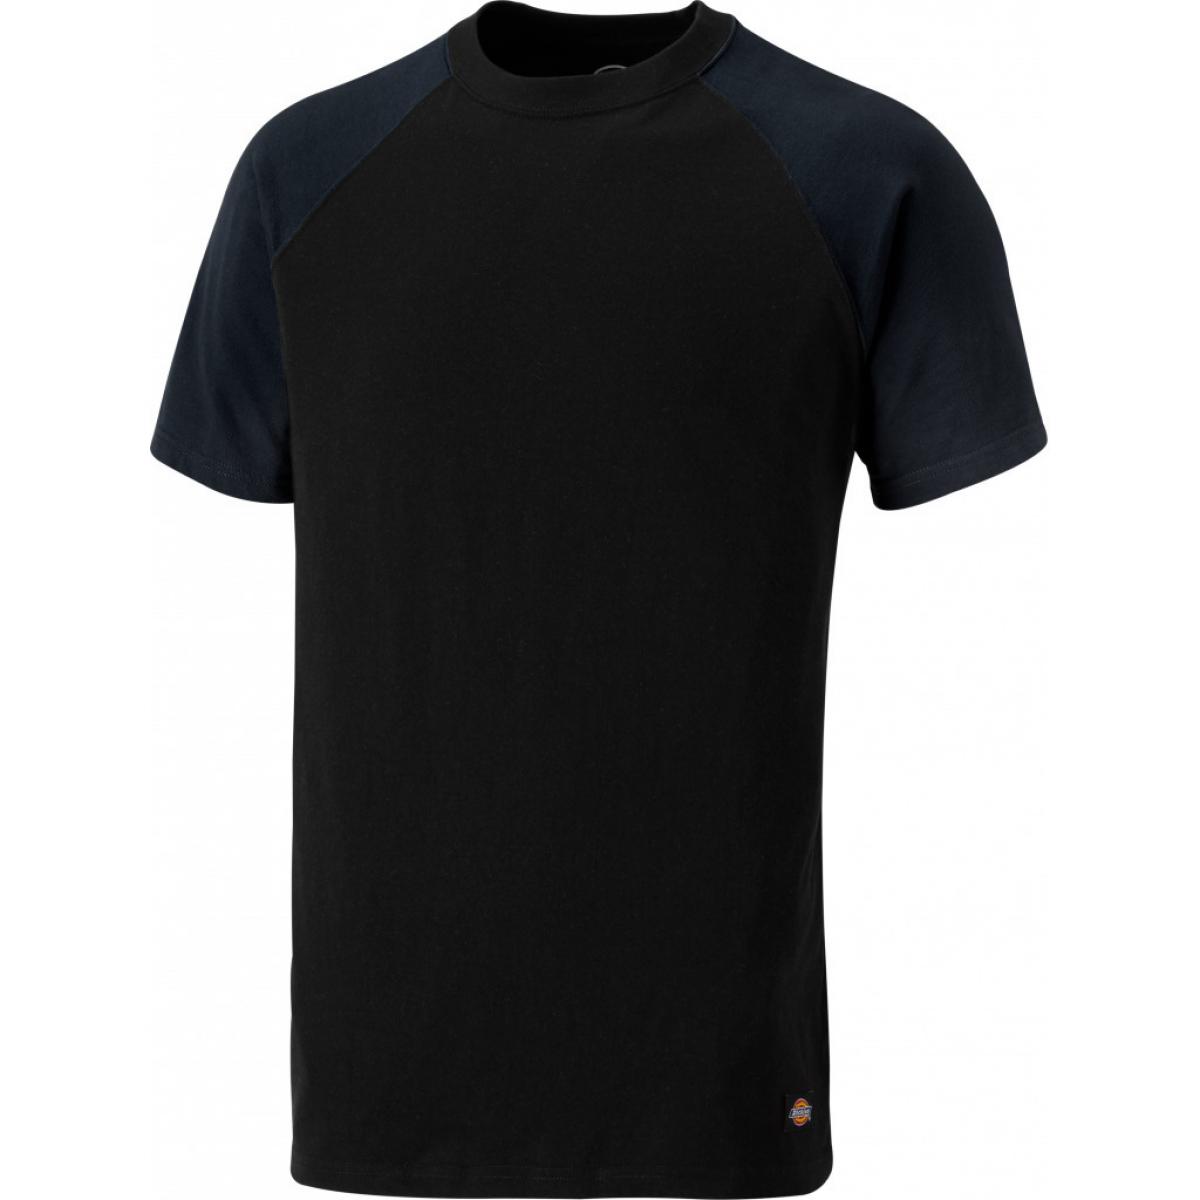 Hersteller: Dickies Herstellernummer: SH2007 Artikelbezeichnung: Zweifarbiges T-Shirt Farbe: Marineblau/Schwarz